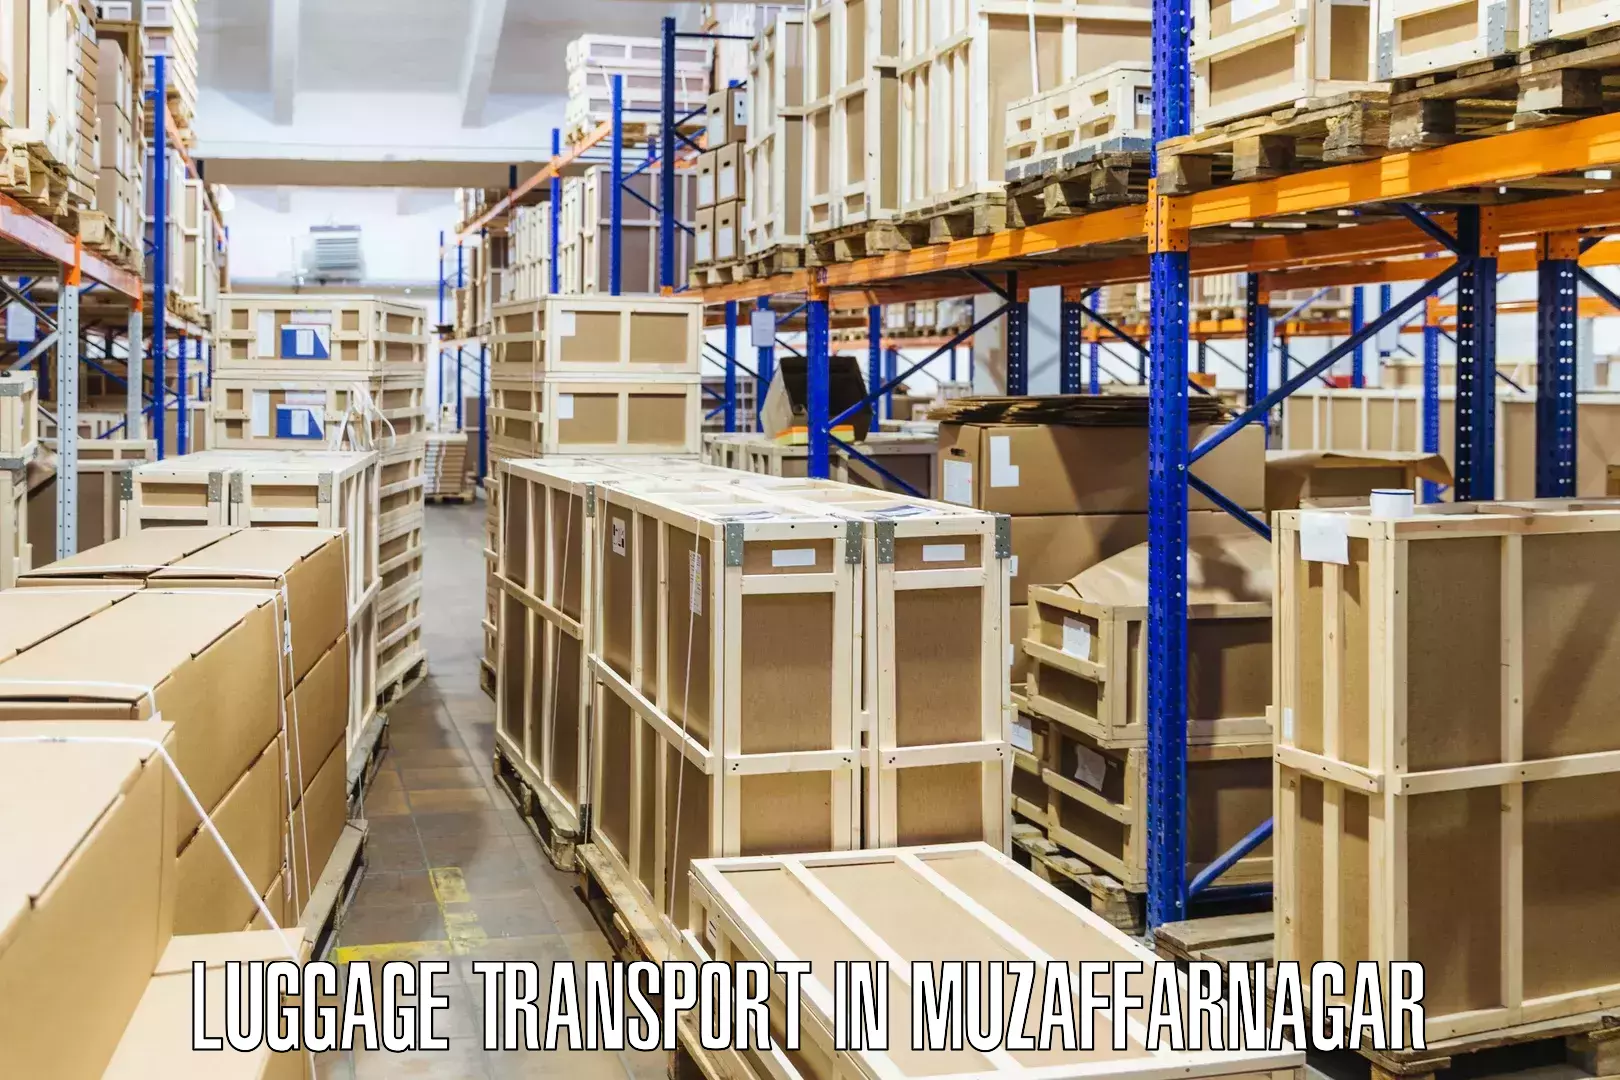 Luggage delivery rates in Muzaffarnagar